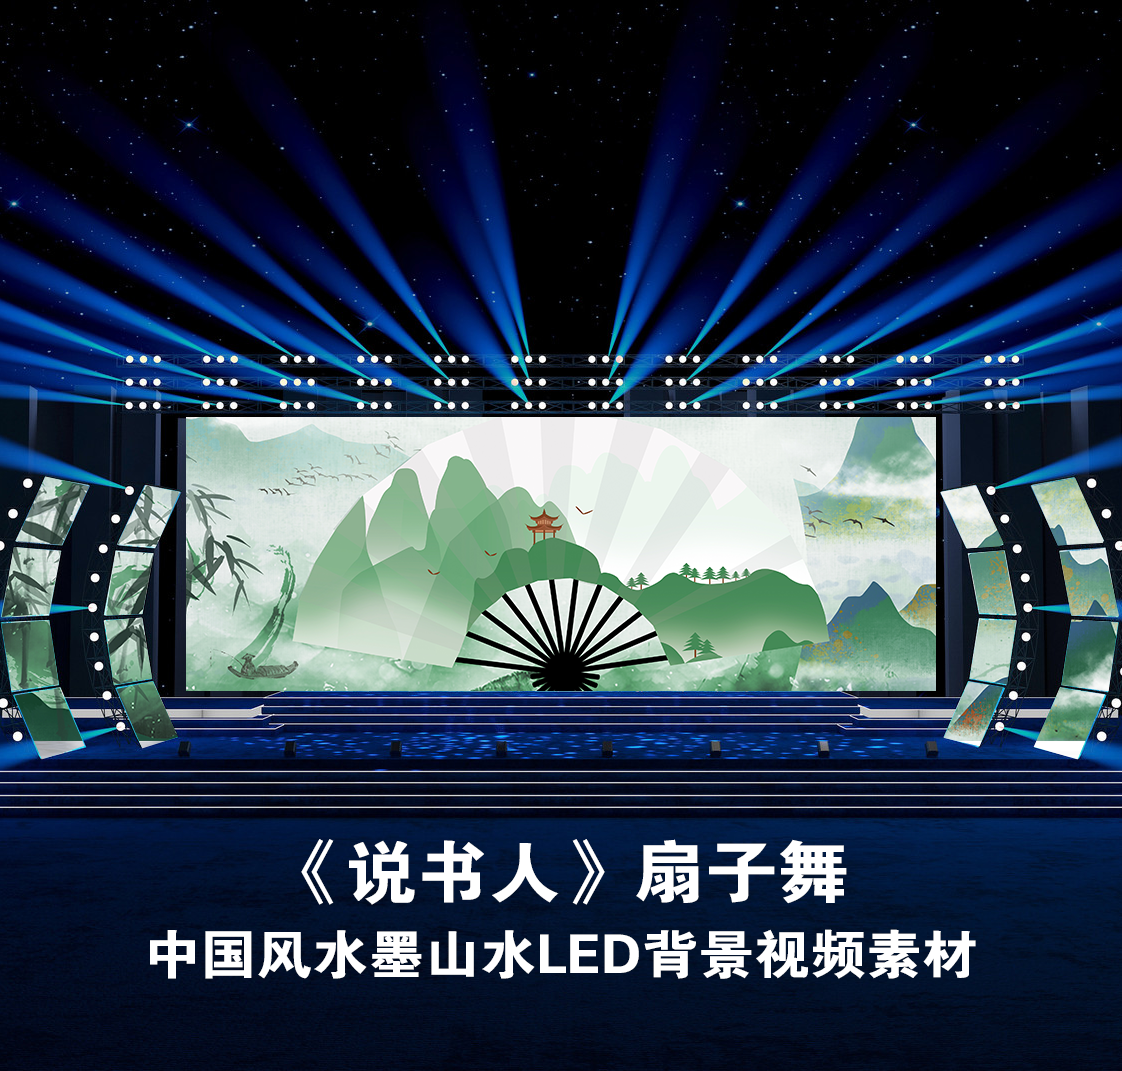 S4440 说书人 扇子舞 中国风汉服秀 节目LED大屏动态背景视频